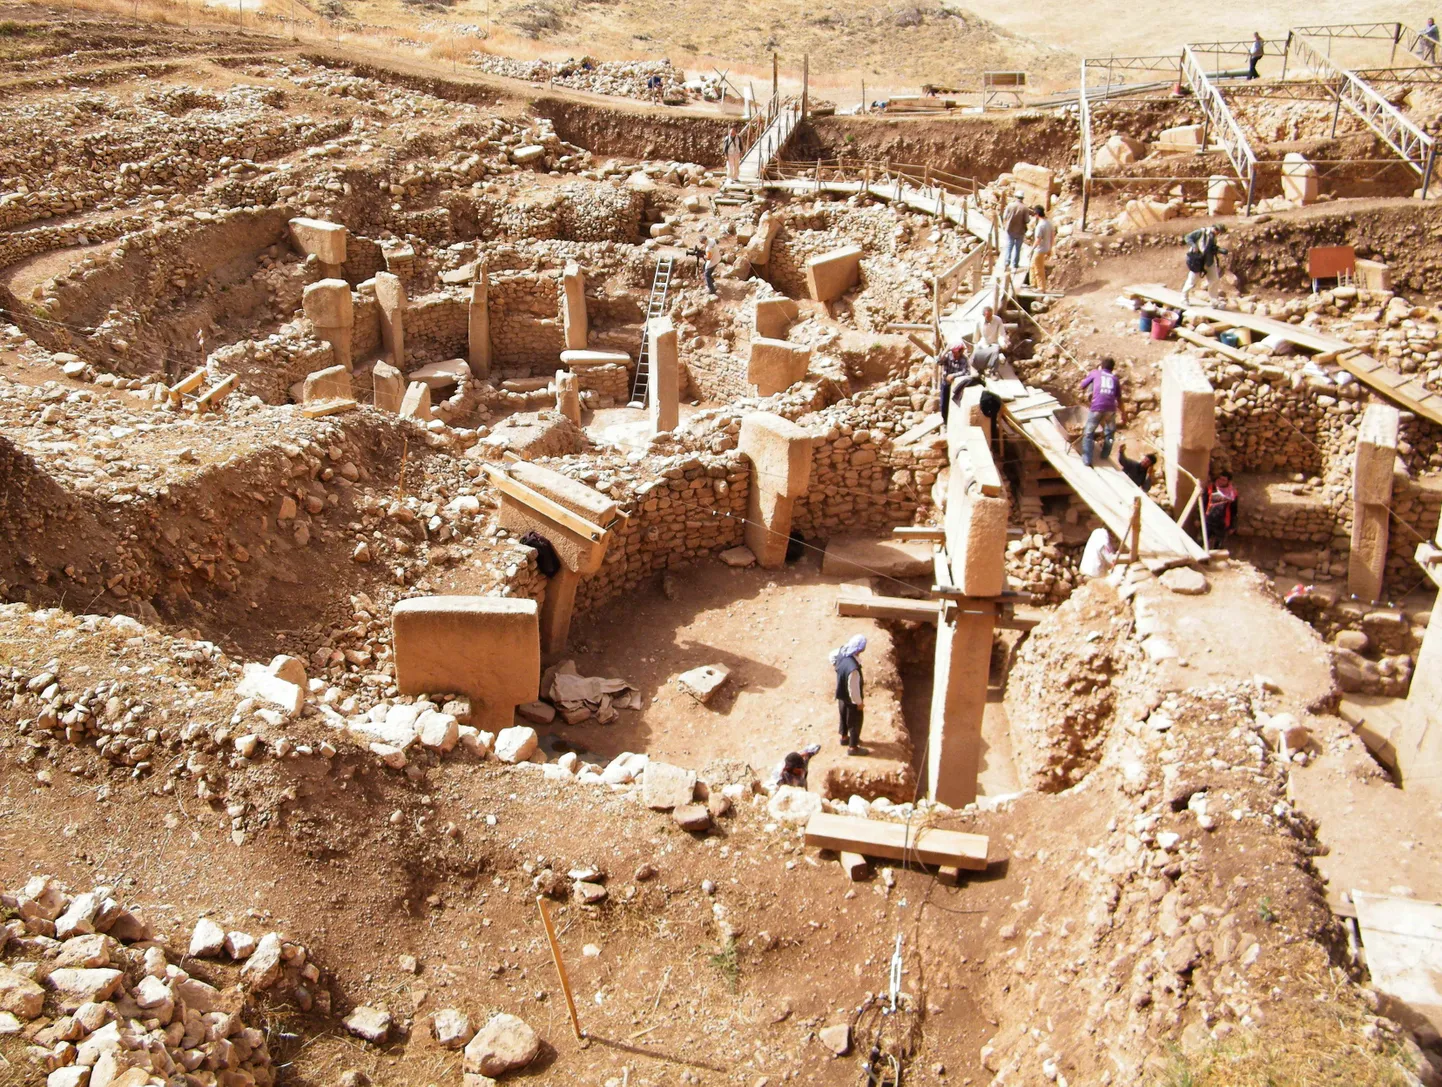 Göbekli Tepe ehitised pärinevad põlluidajate eelsest ajast. Ka küttide ja korilaste ühiskonnad rajasid linnu. Türgi lõunaosas olev välja kaevatud Göbekli Tepe asulakoht 2010. aastal.